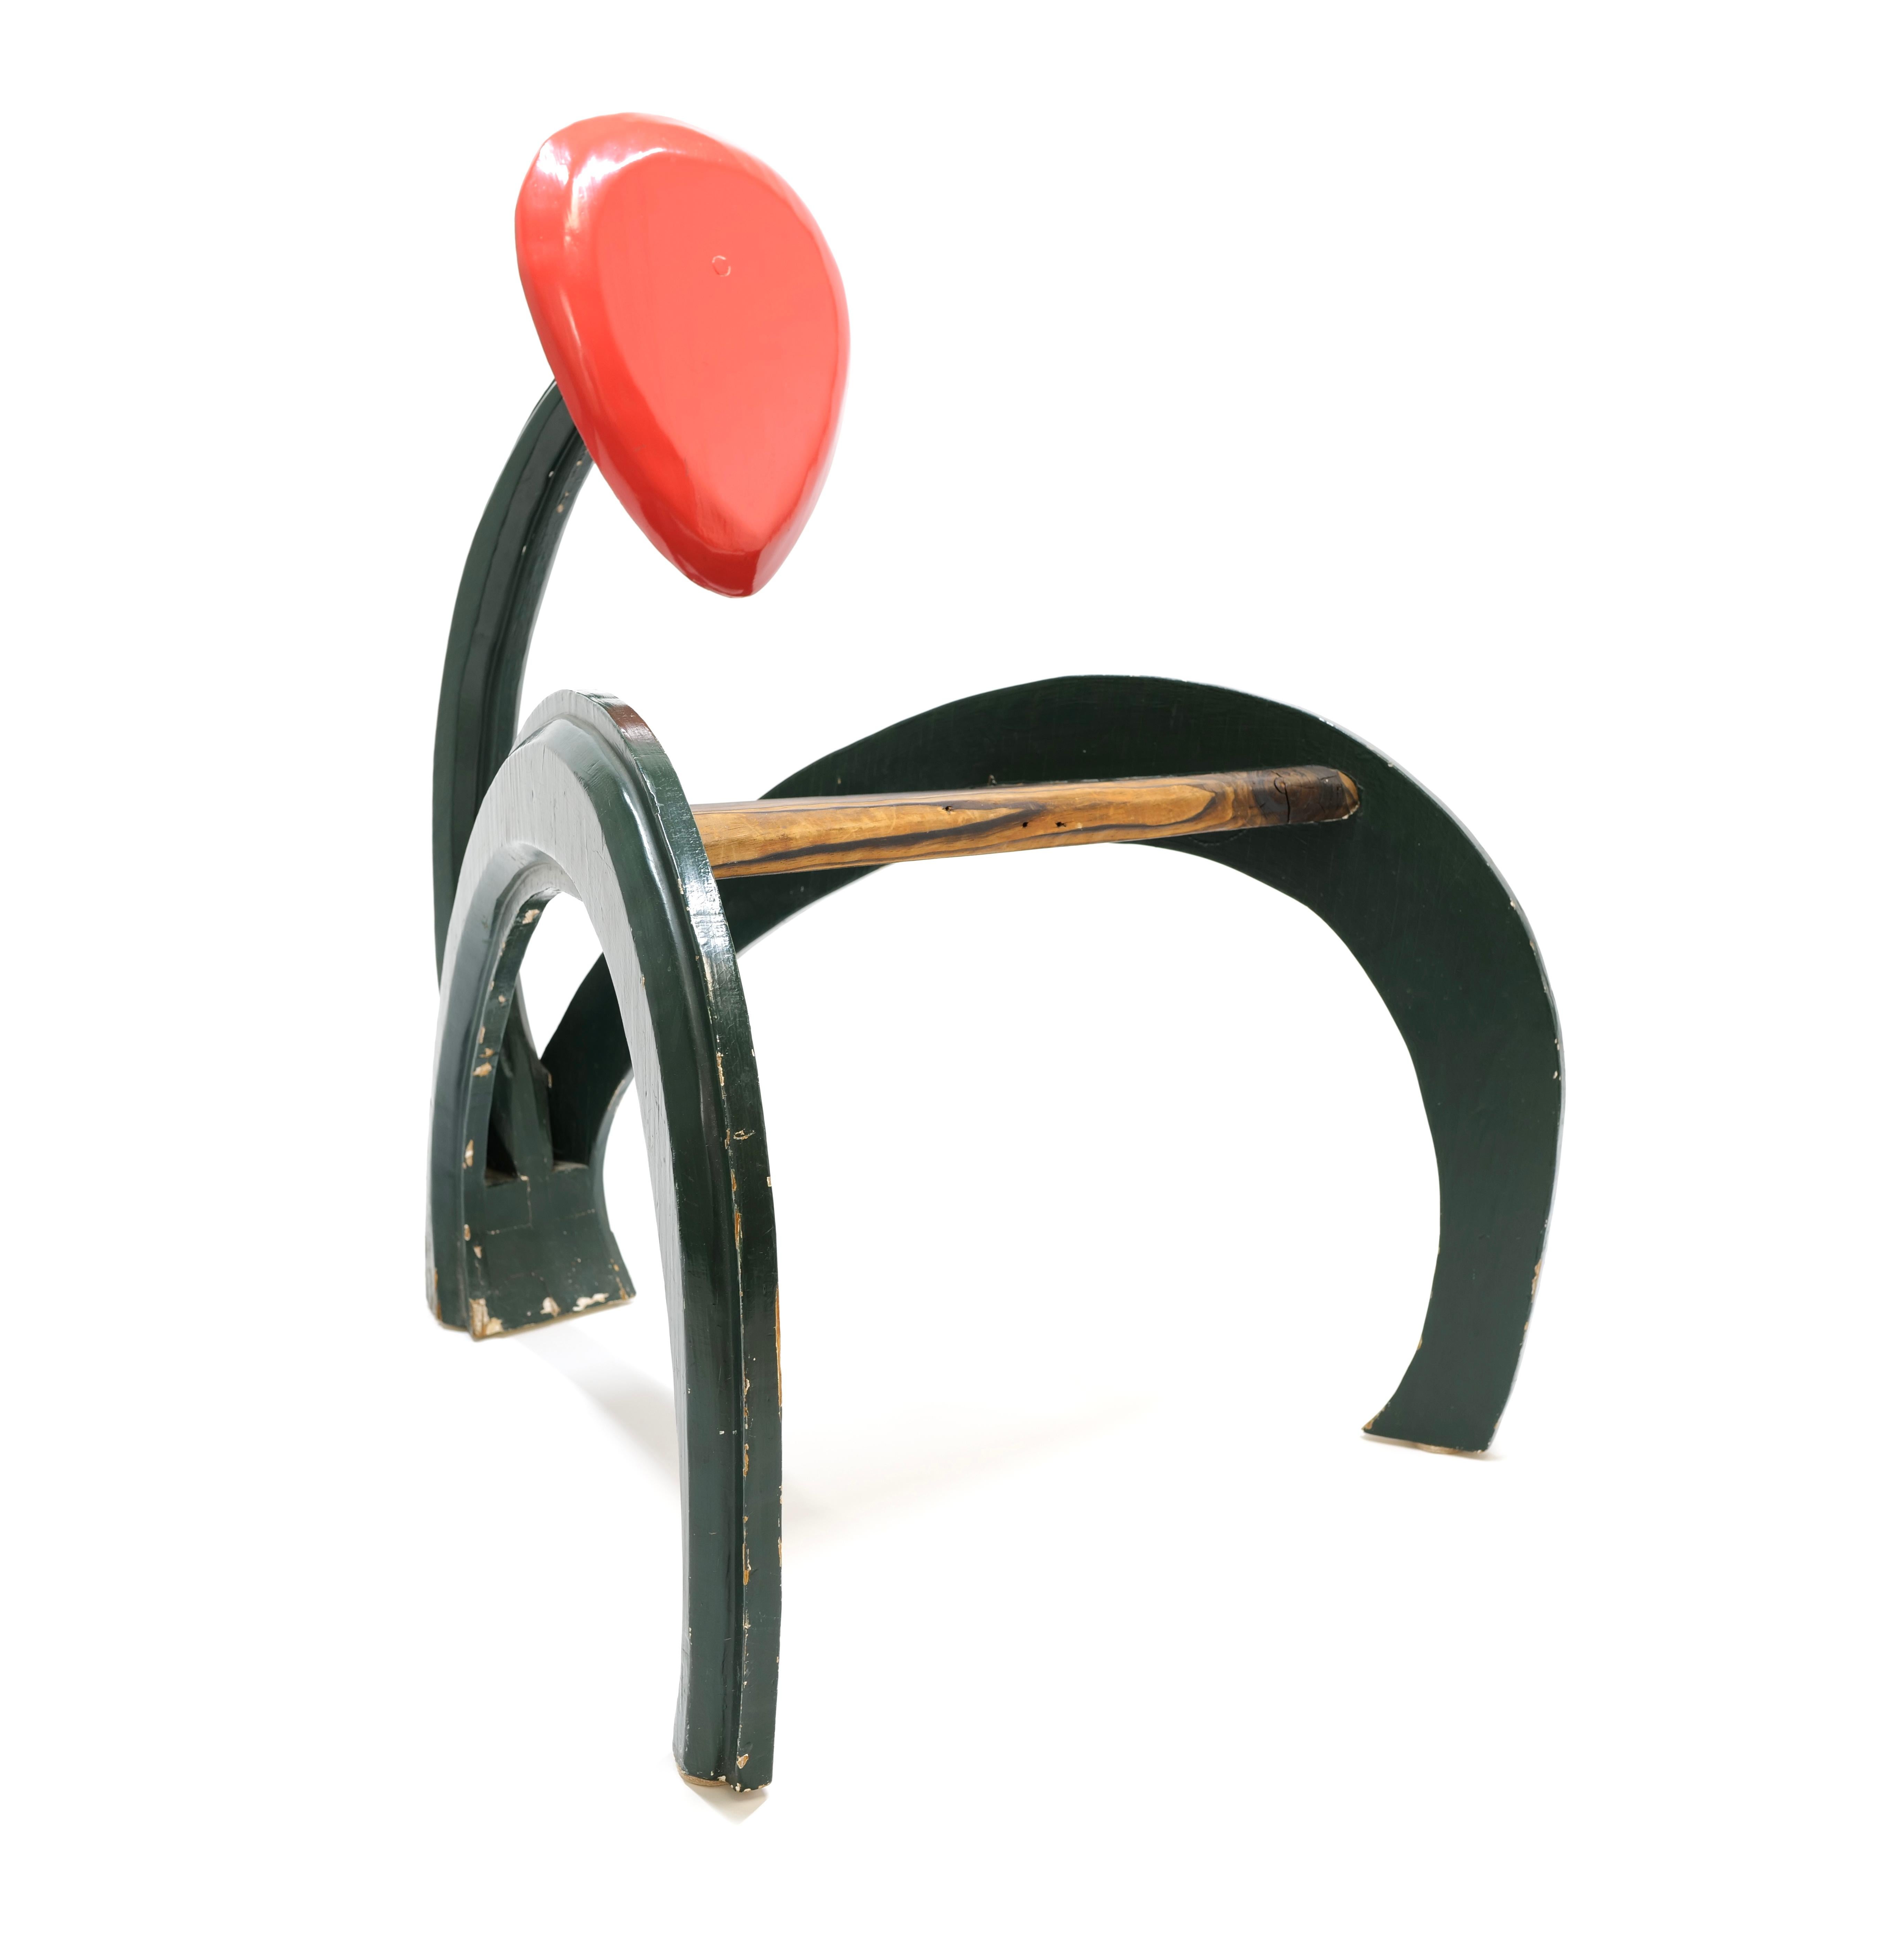 Der Stuhl ist ganz aus Holz gefertigt, seine schlanken Beine und die Rückenlehne erstrecken sich anmutig wie die Fäden eines Staubgefäßes. Die Rückenlehne, die an eine Ameise erinnert, ist sanft geschwungen und bietet ergonomische Unterstützung. Der